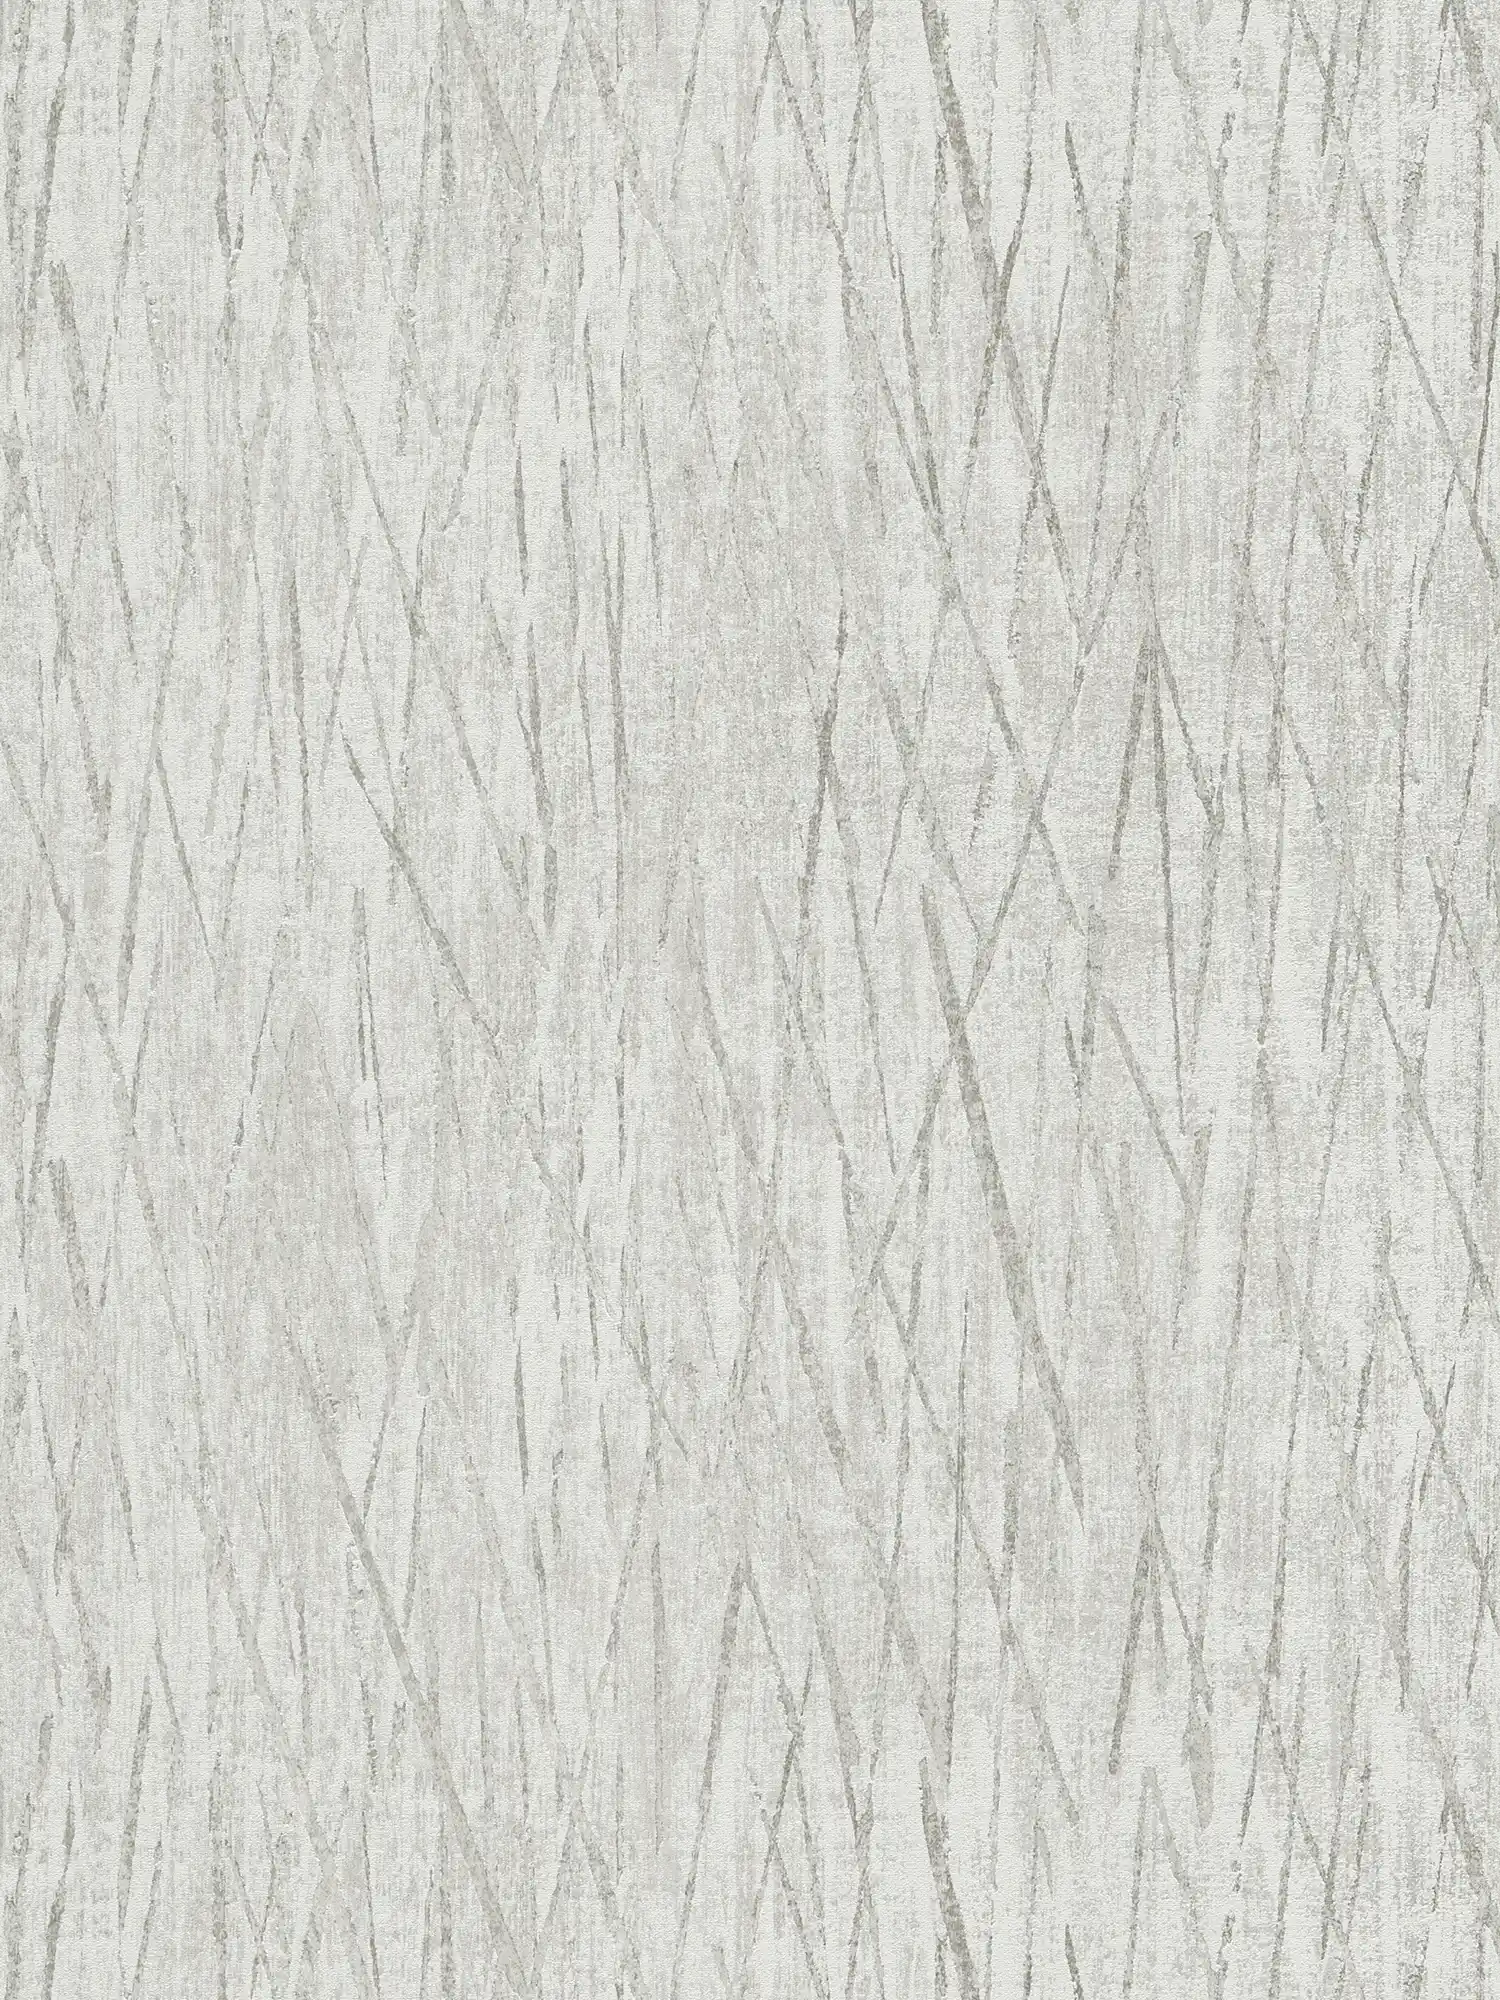 Structuurbehang met metallic kleuren - grijs, metallic
